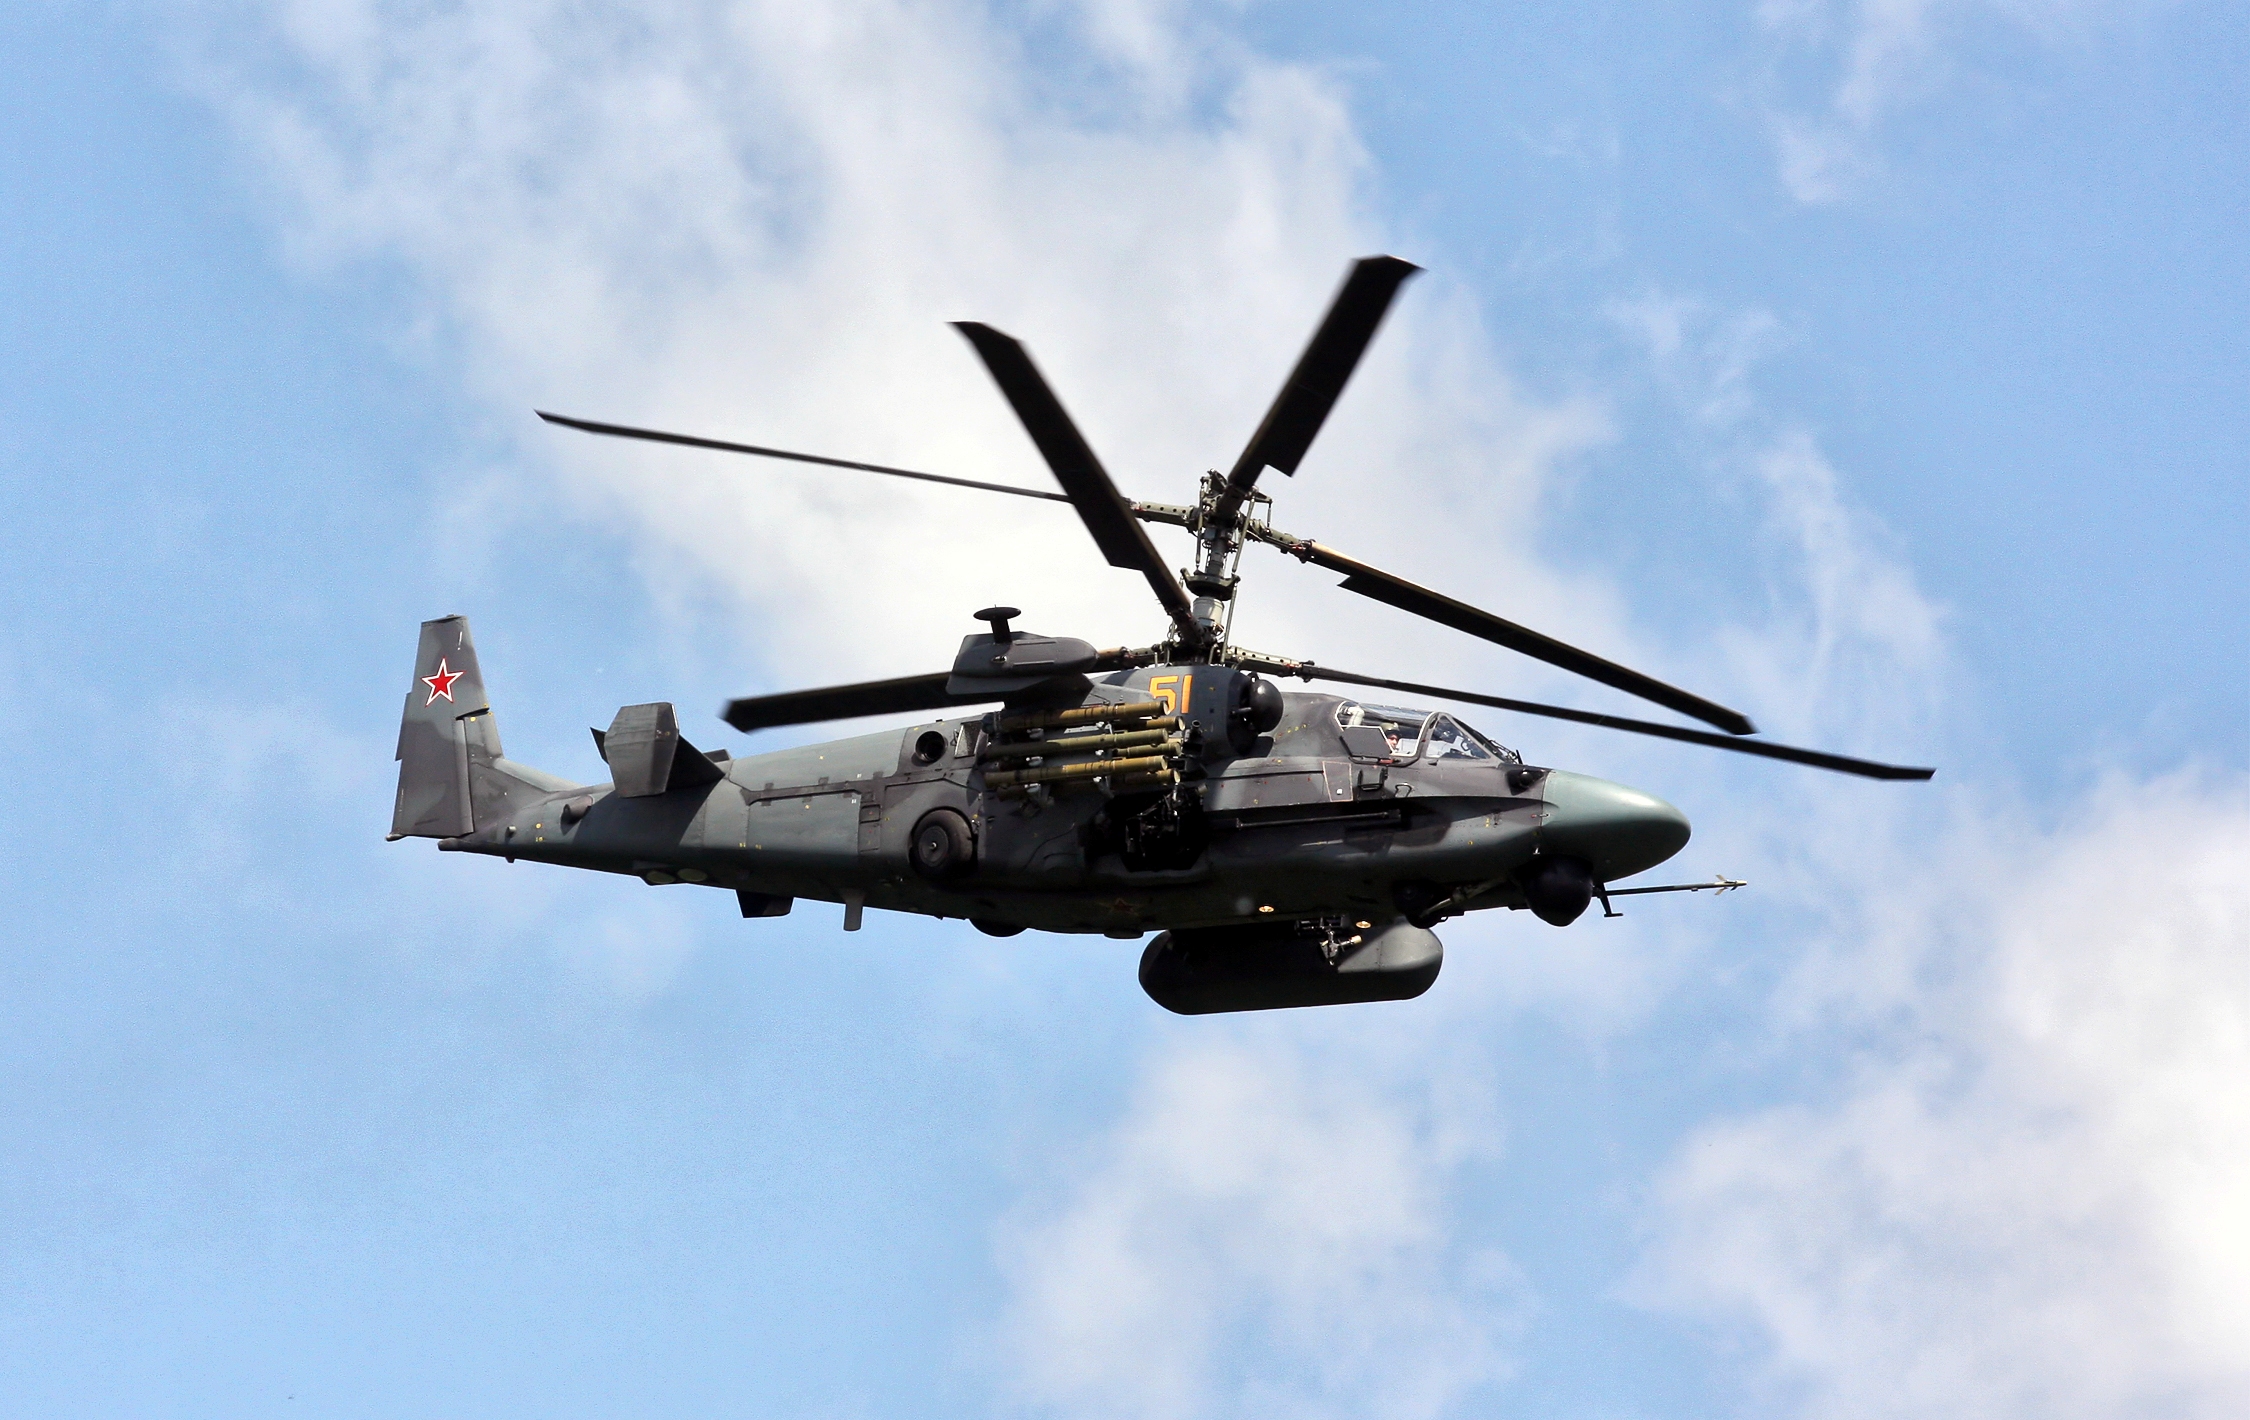 L'AFU ha mostrato come ha abbattuto un elicottero d'attacco russo Ka-52 Alligator usando sistemi di difesa aerea portatili RBS 70.